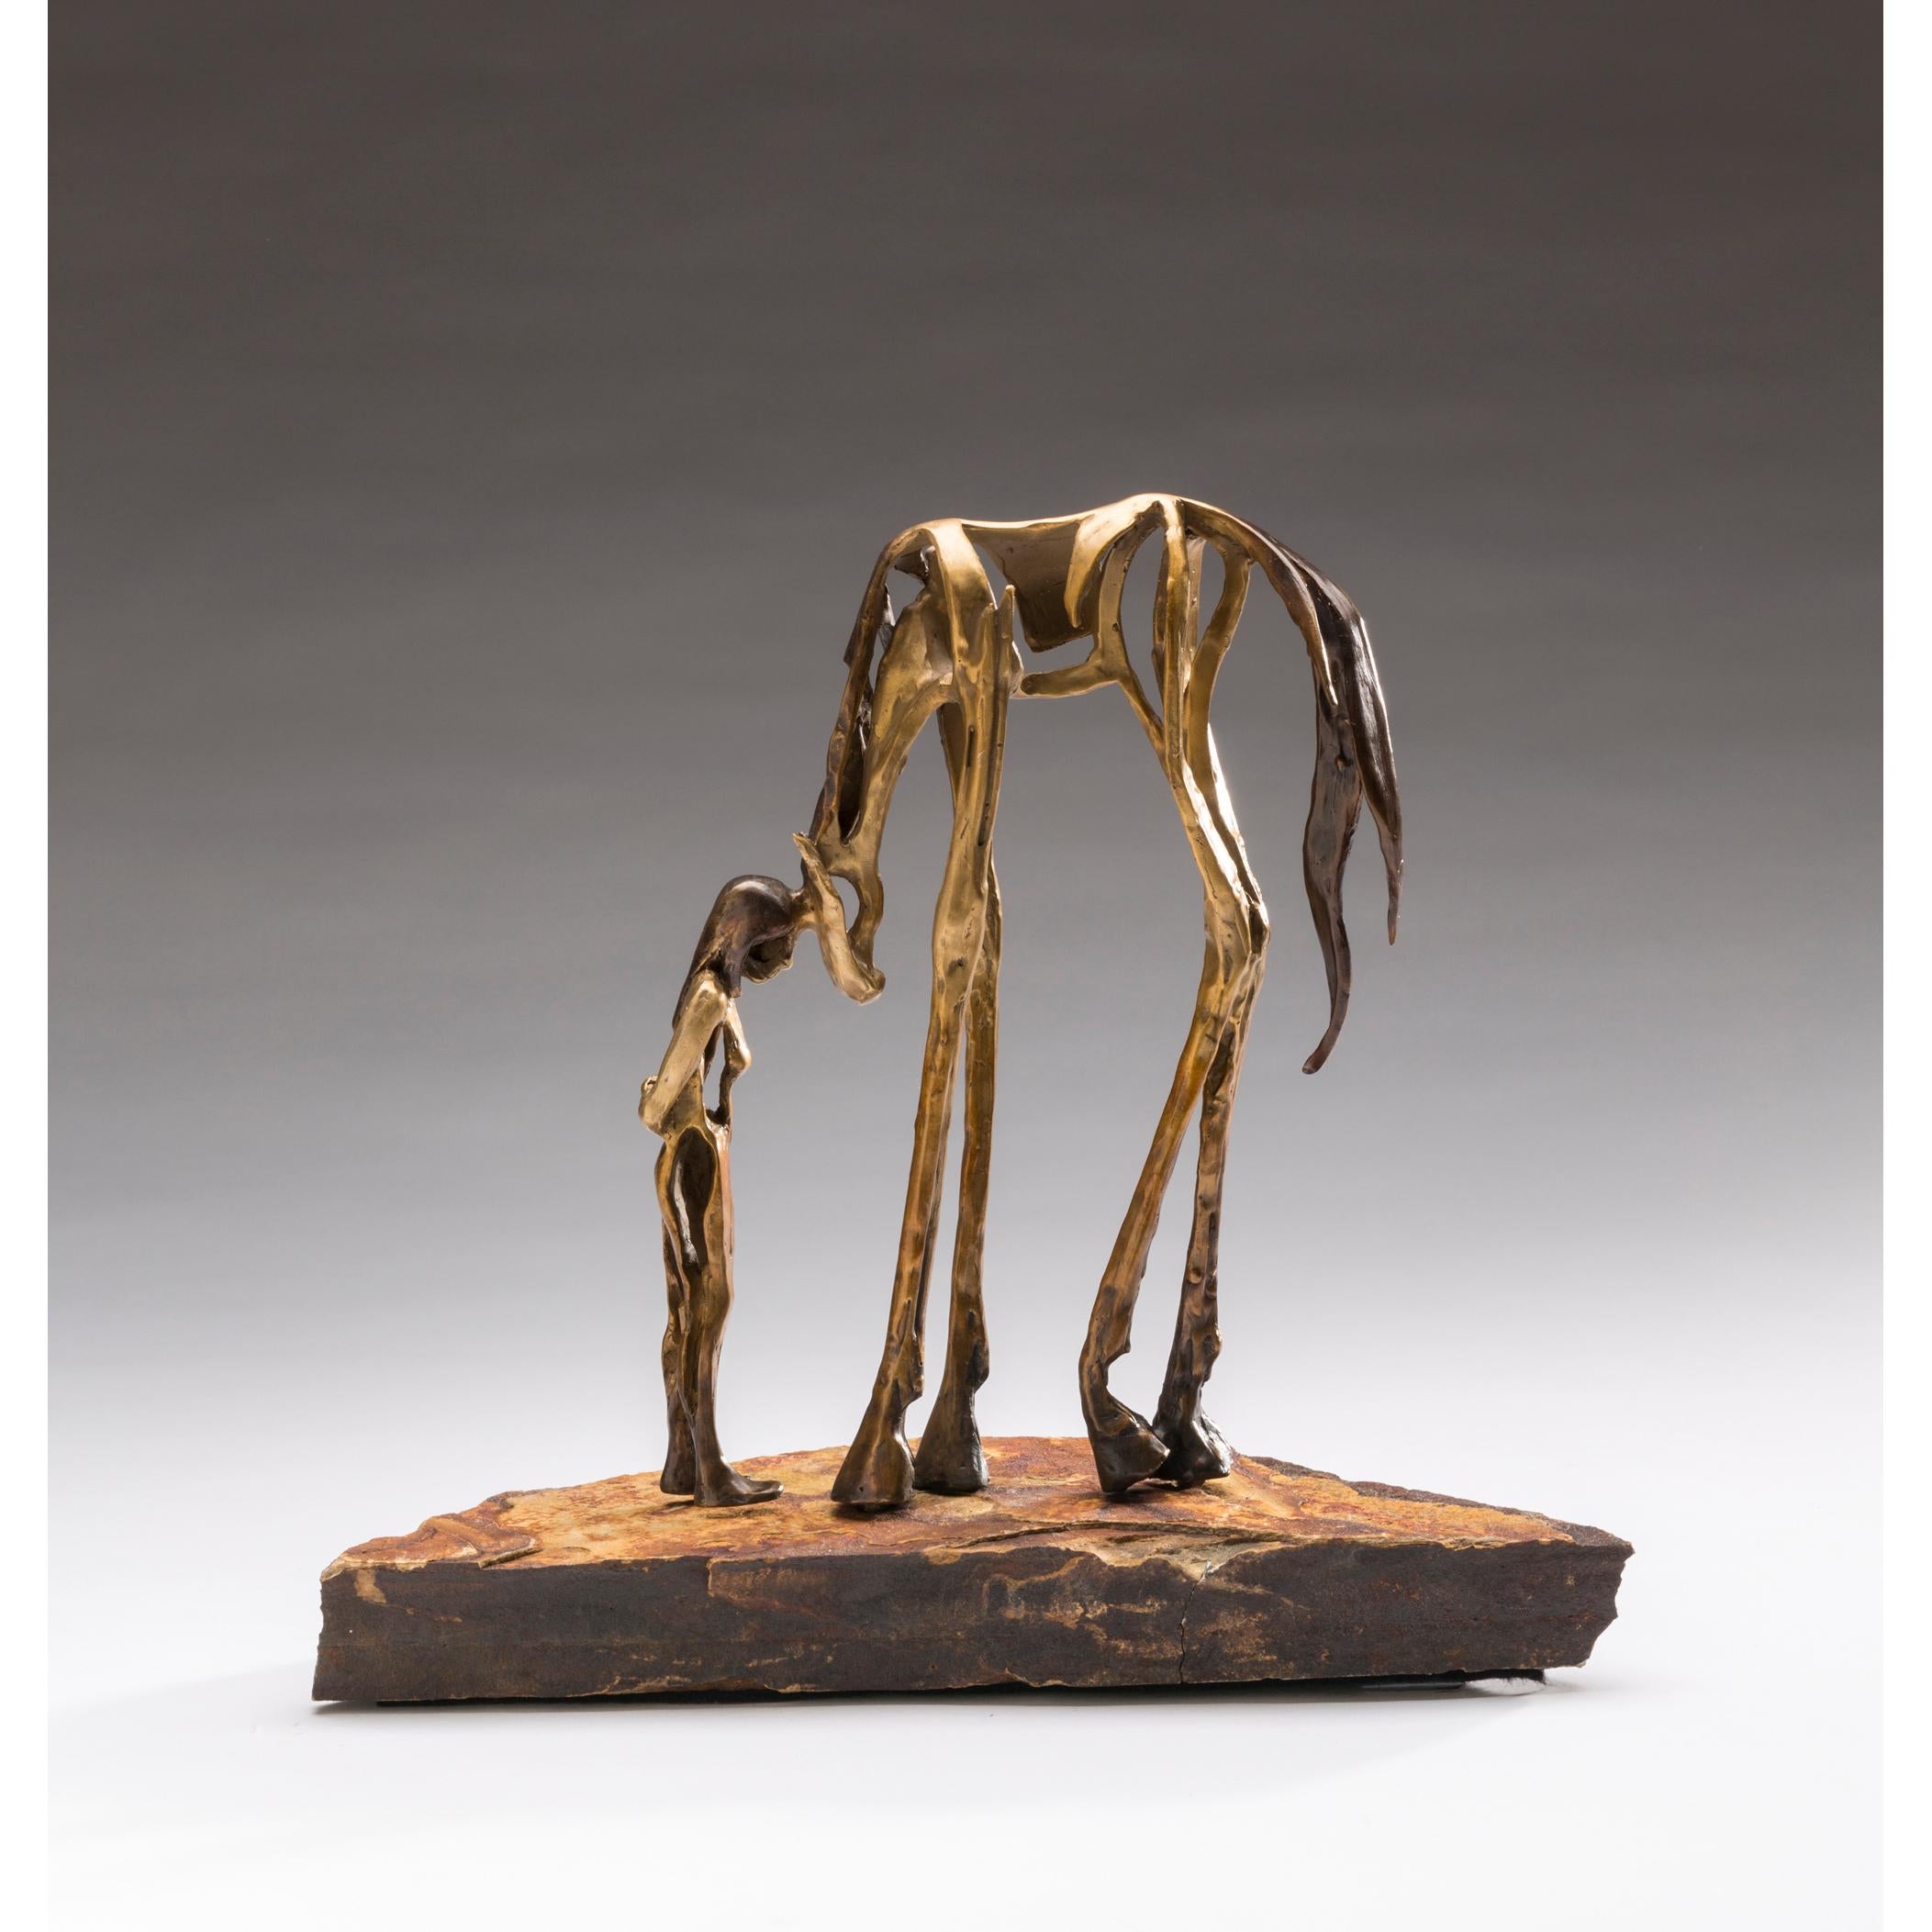 Sandy Graves Figurative Sculpture - Connect 22/35